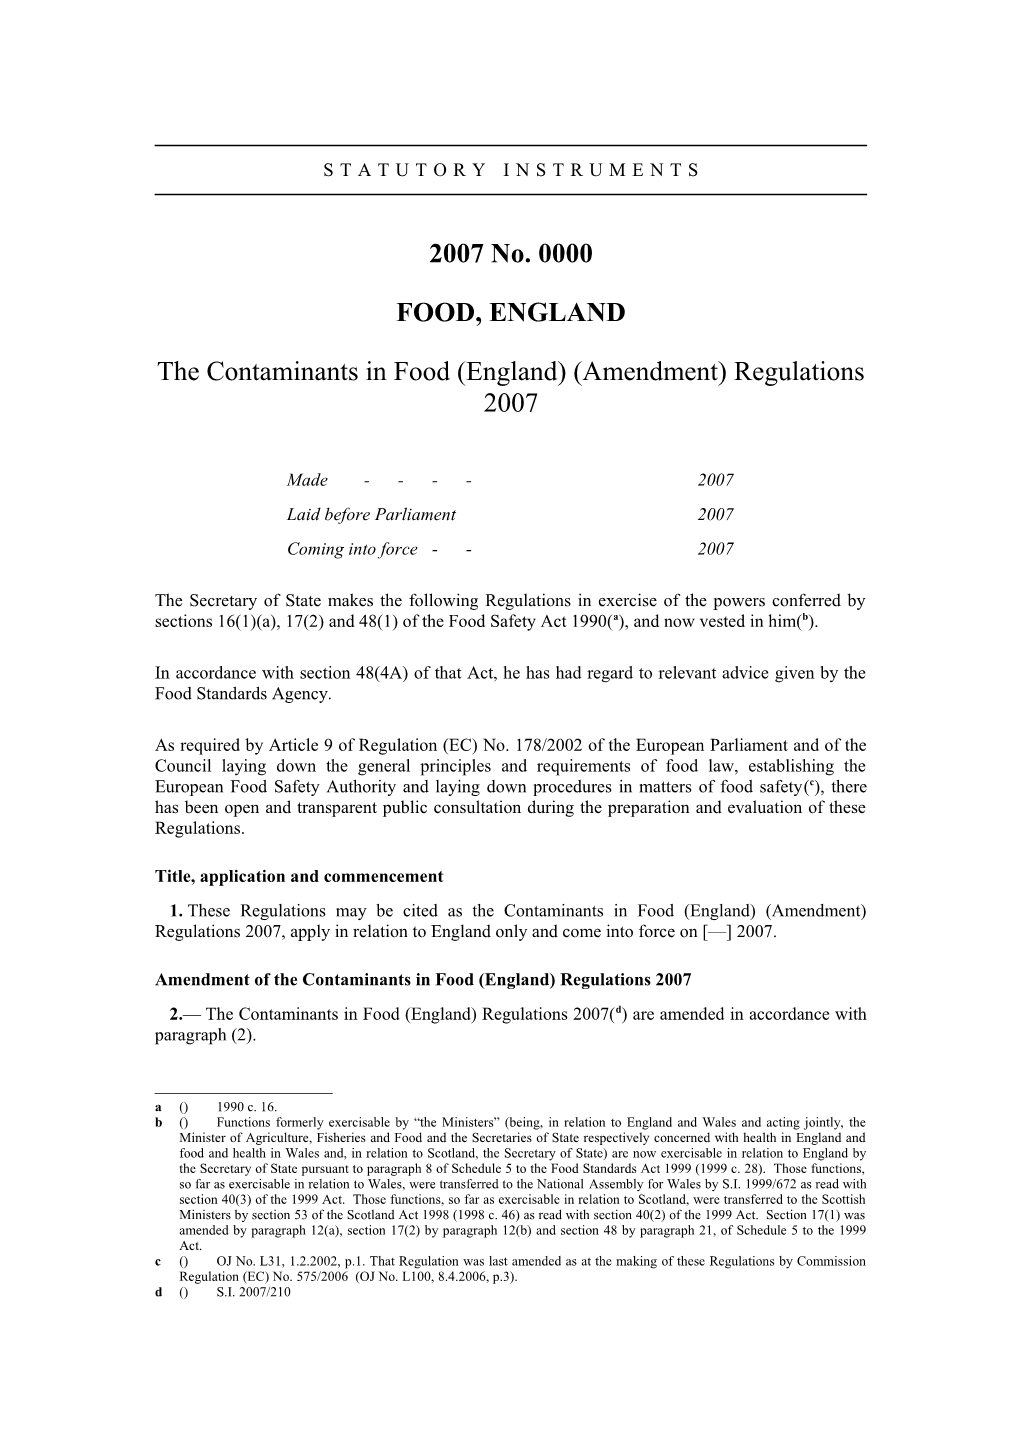 The Contaminants in Food (England) (Amendment) Regulations 2007